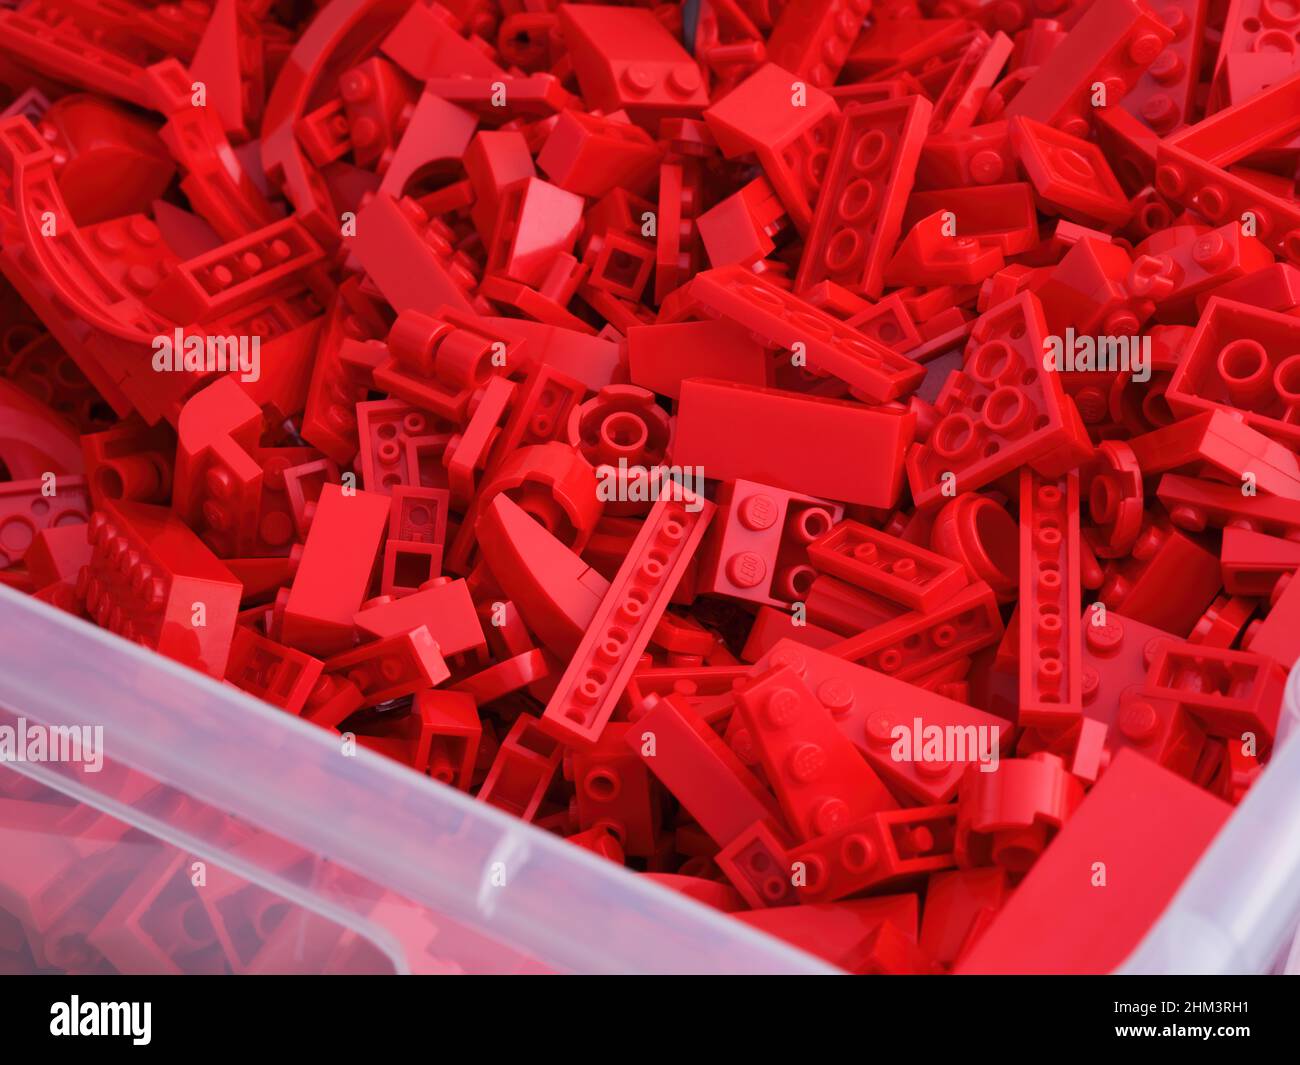 Tambow, Russische Föderation - 16. Juli 2021 Viele rote Lego-Blöcke, Steine  und Stücke in einem großen Plastikbehälter Stockfotografie - Alamy